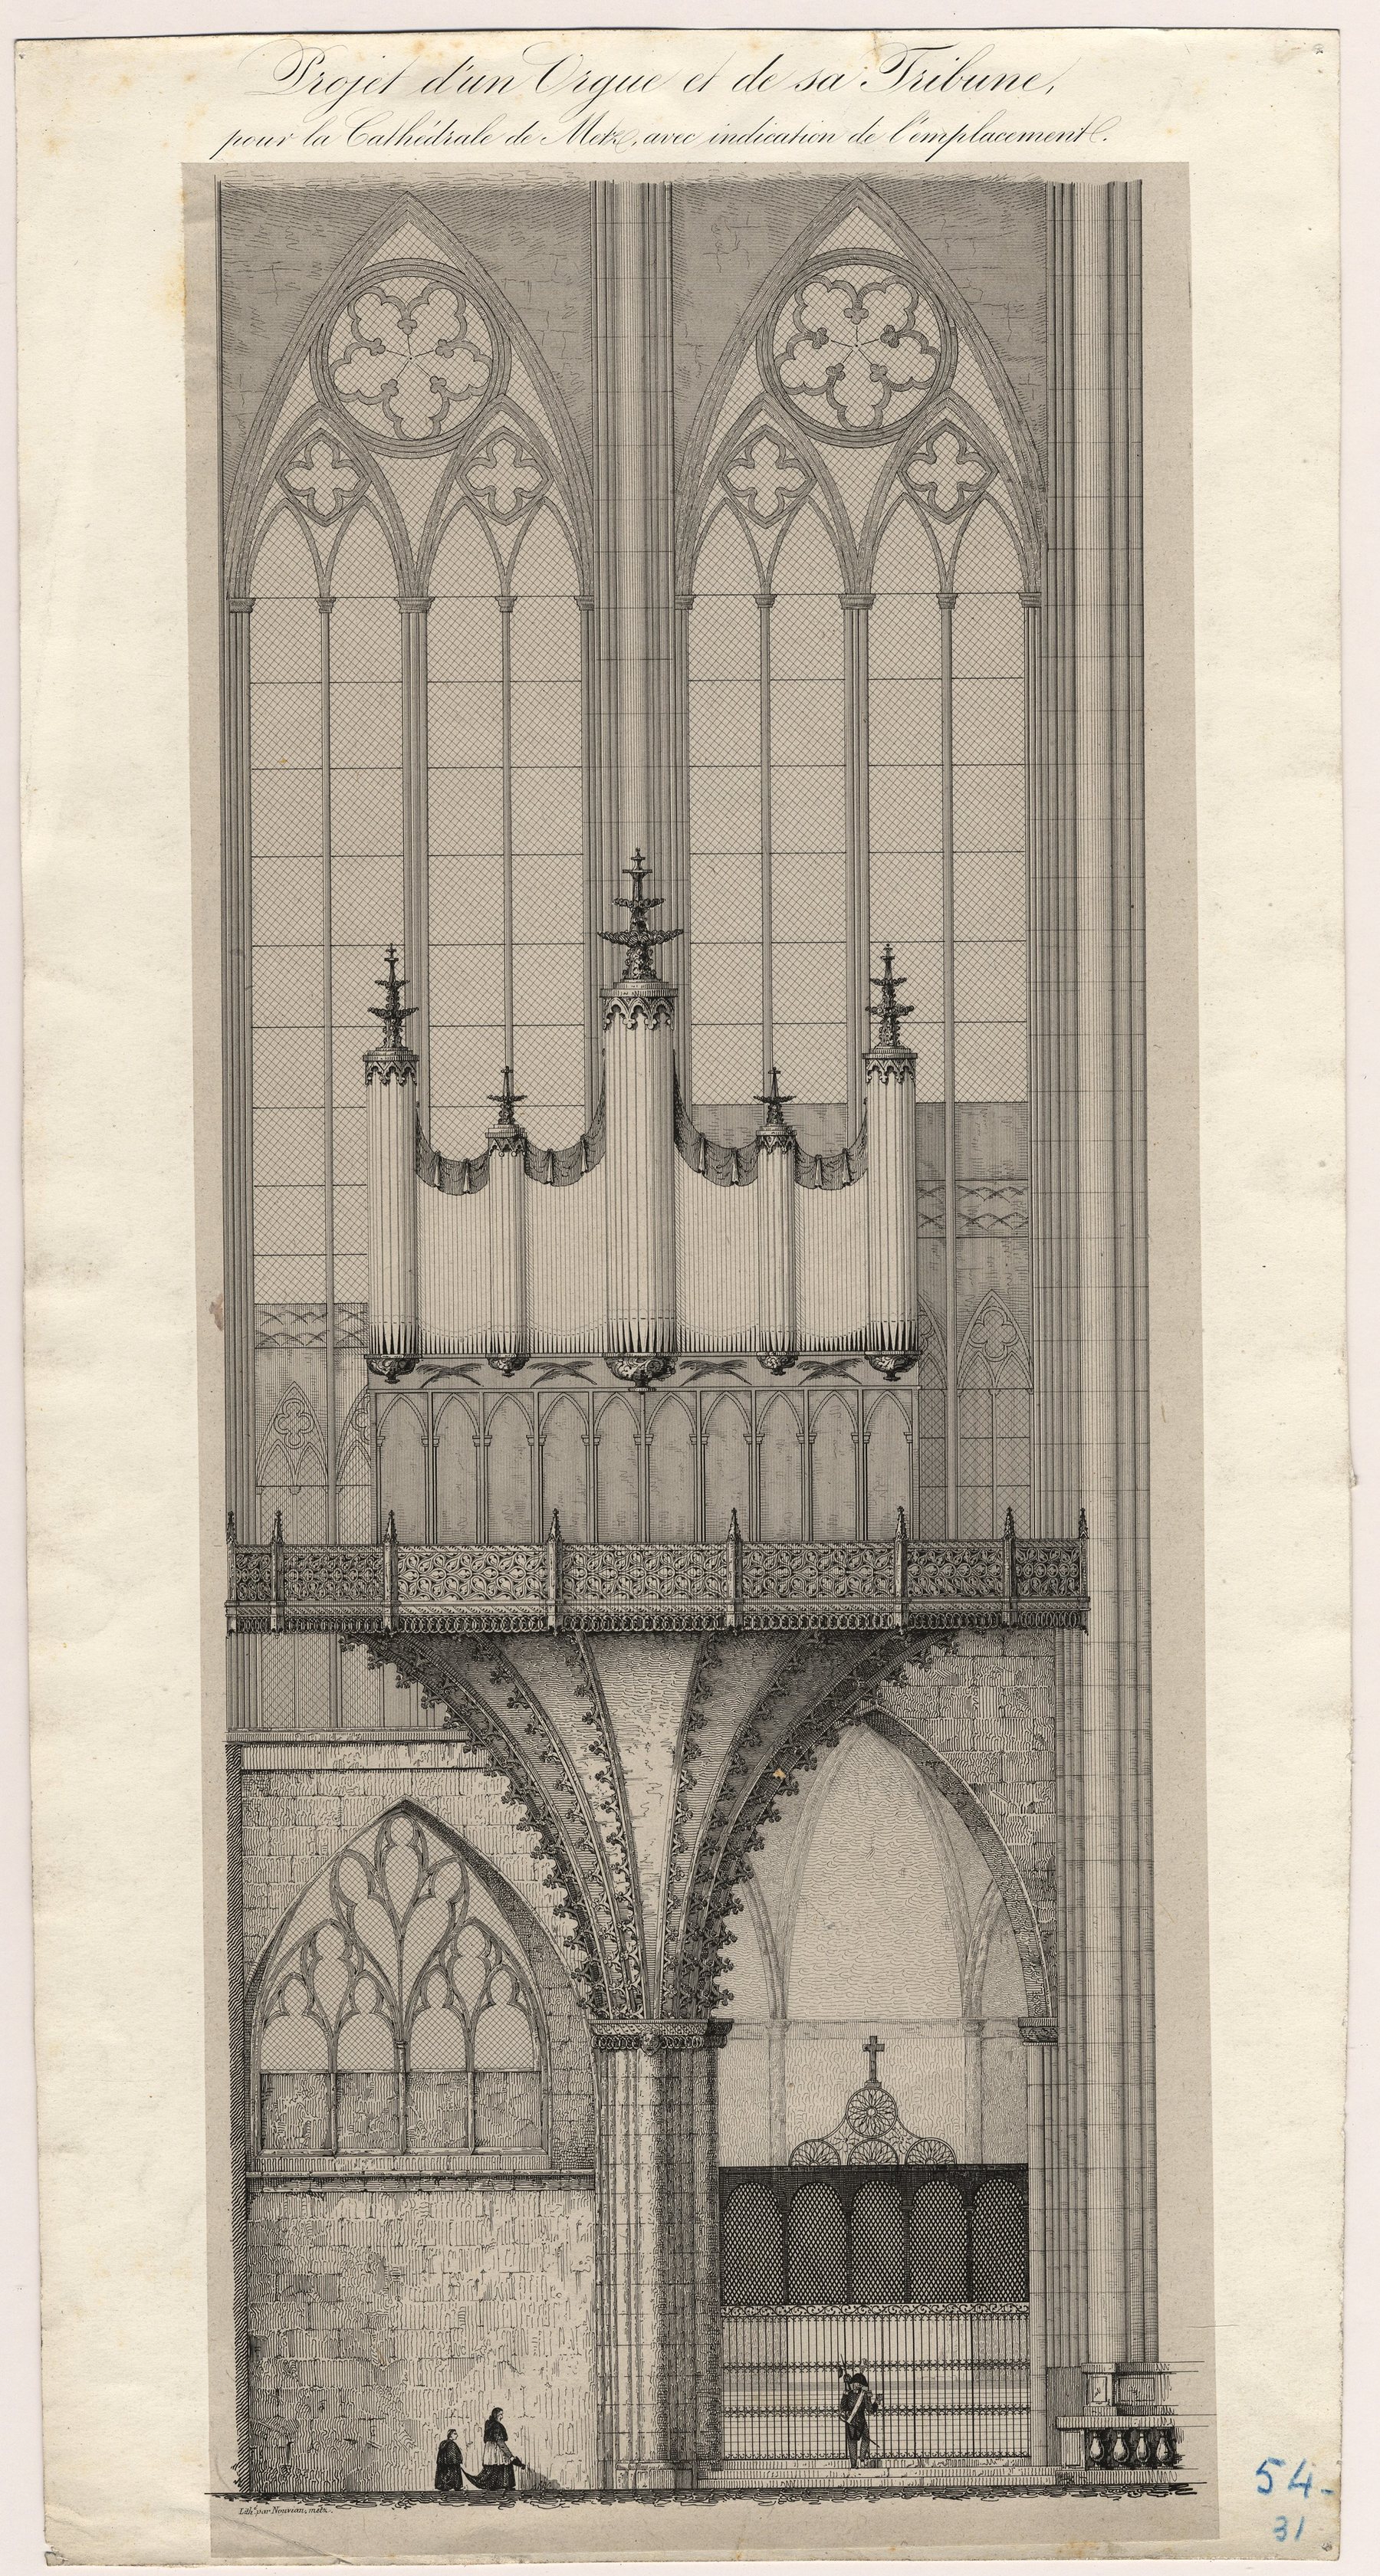 Contenu du Projet d'un orgue et de sa tribune pour la Cathédrale de Metz avec indication de l'emplacement